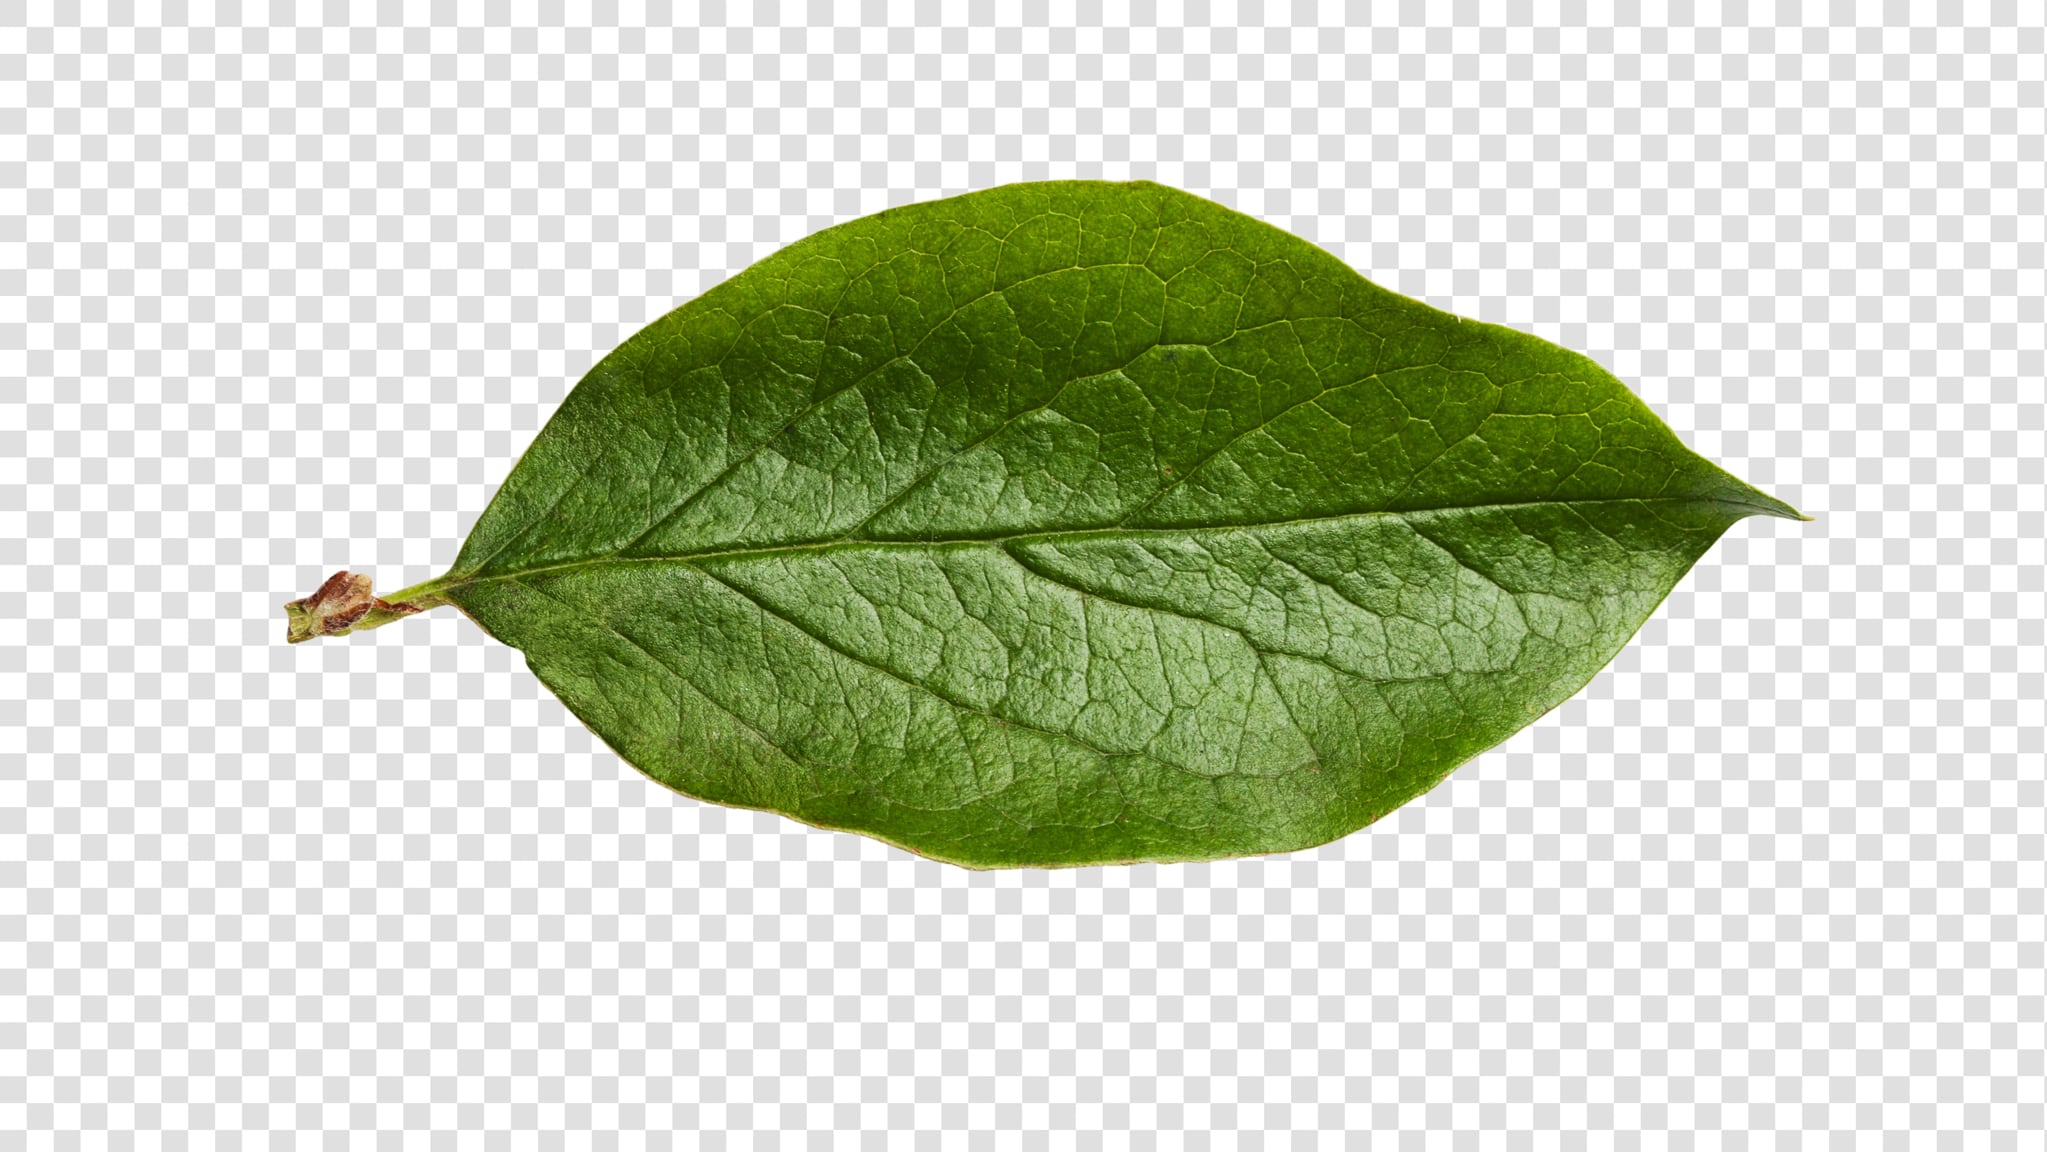 Leaf image asset with transparent background